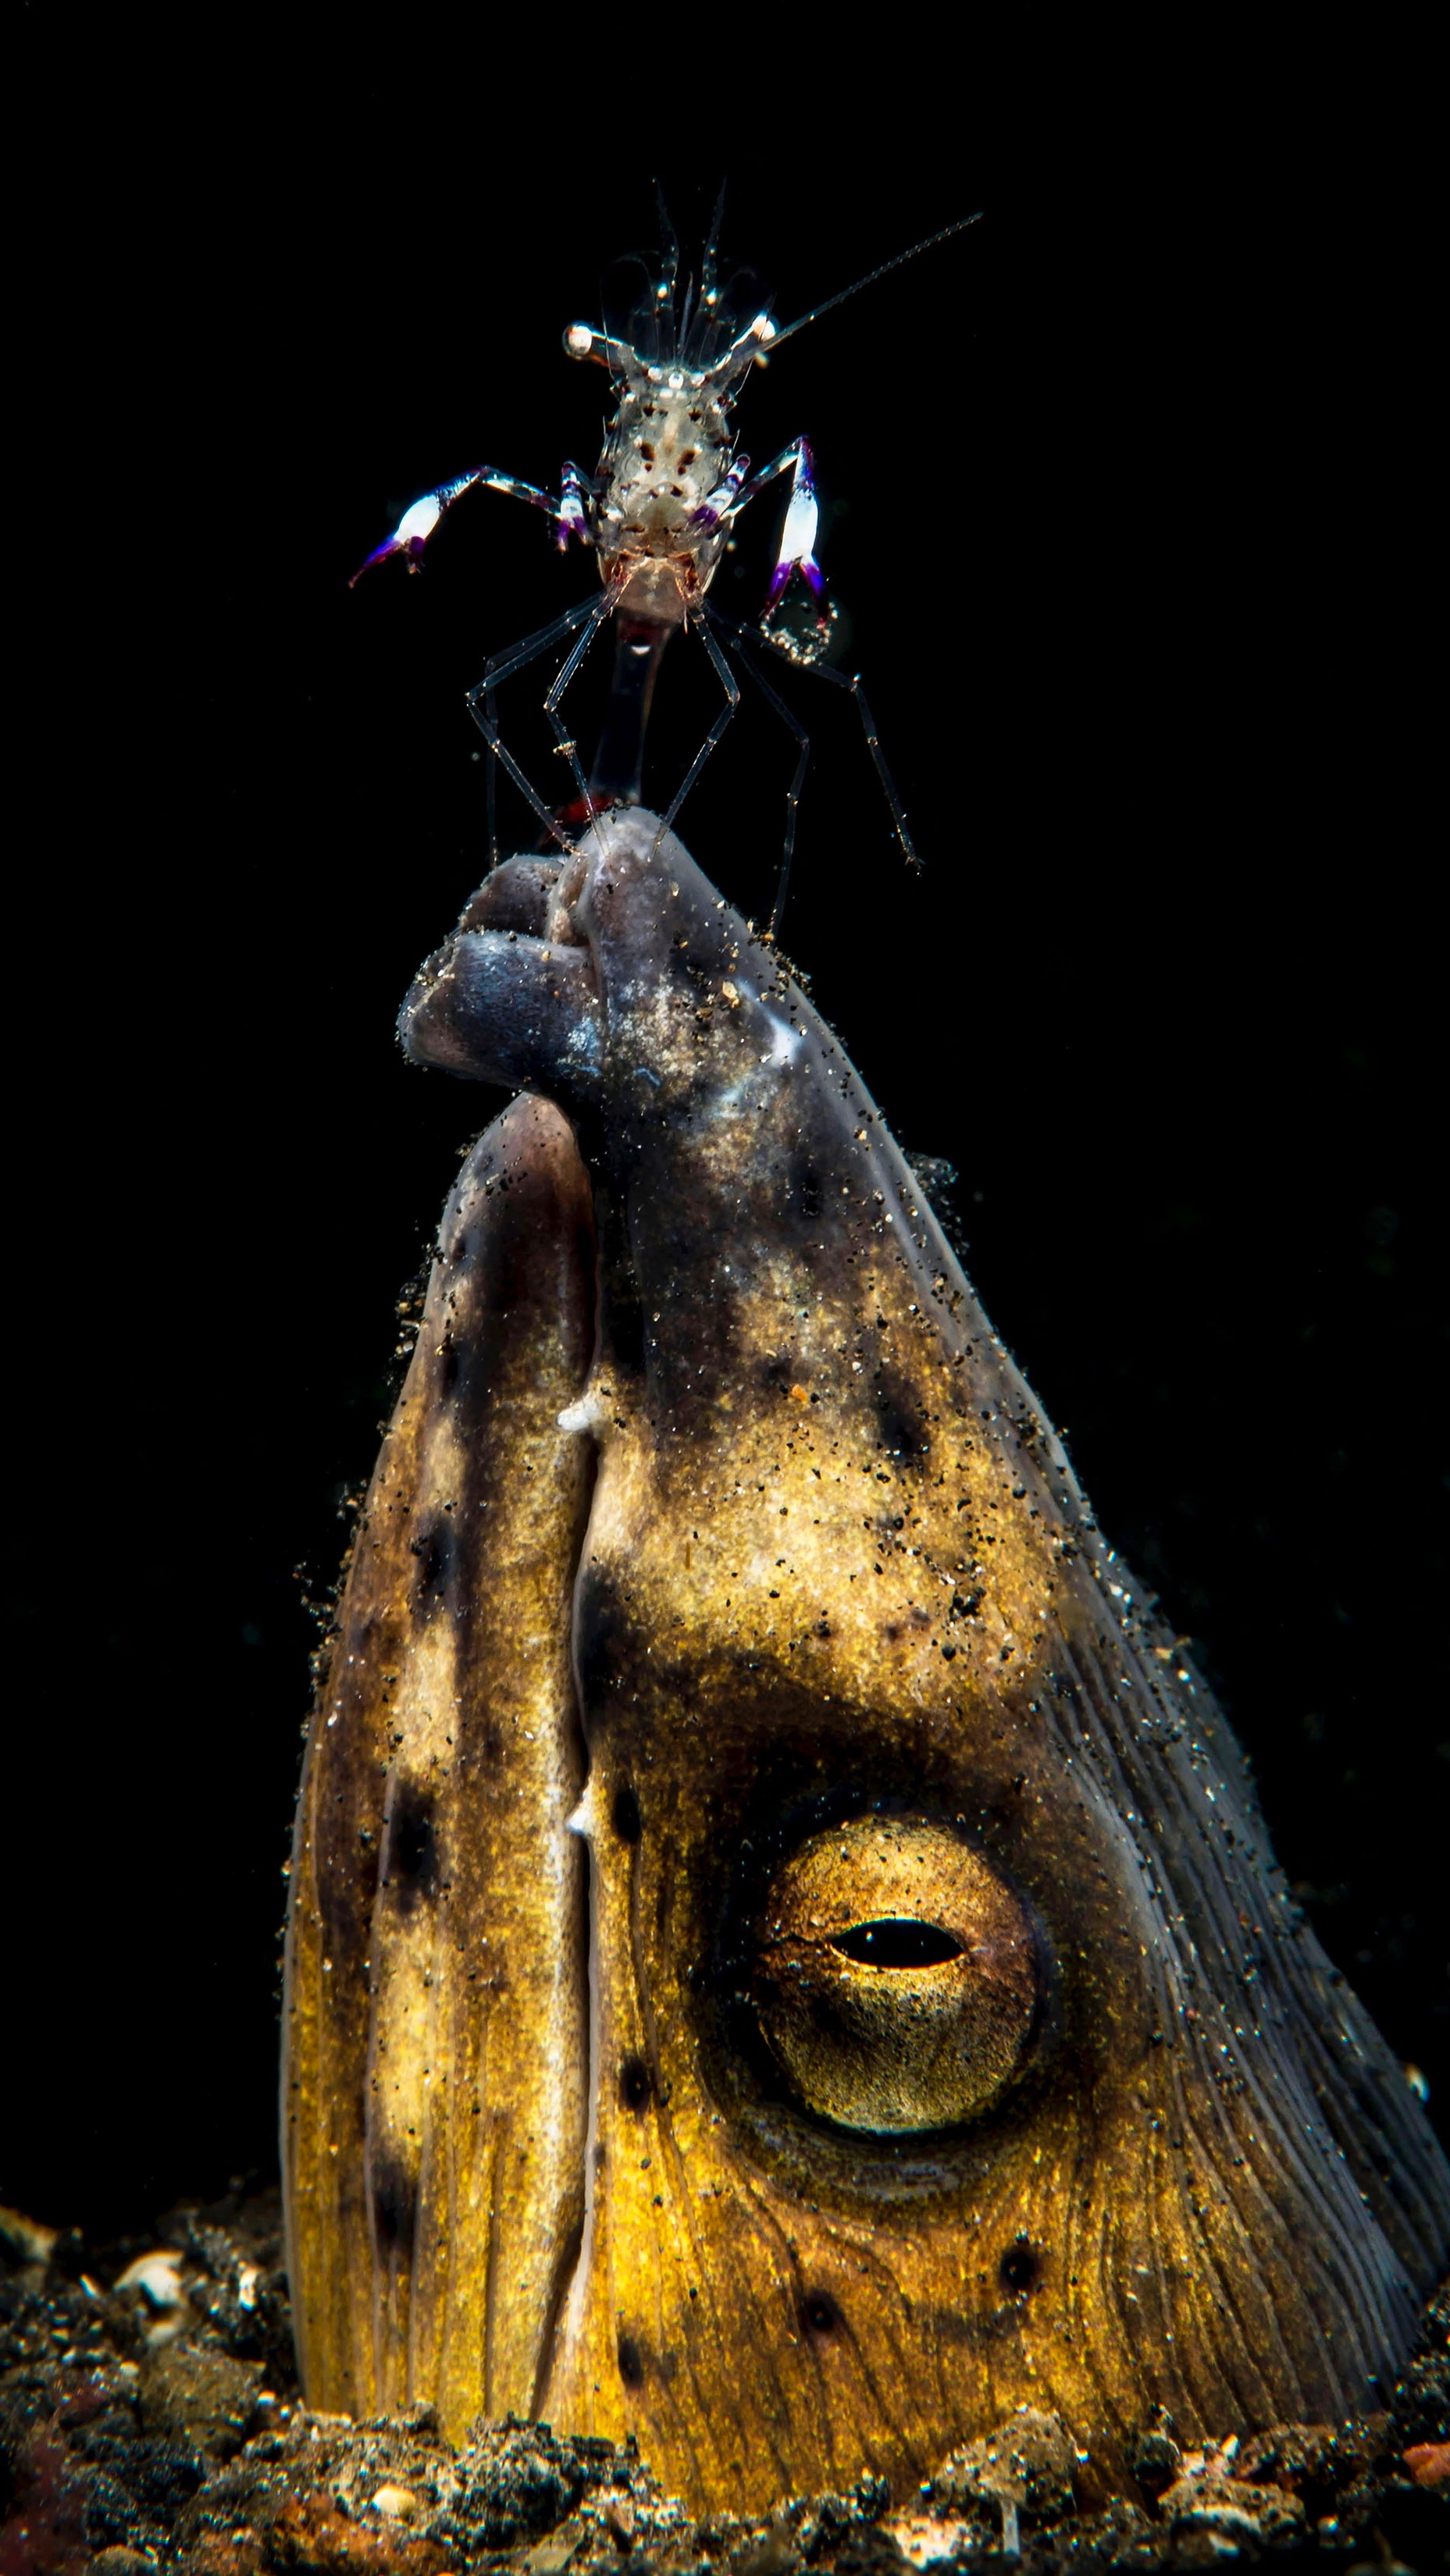 Snake Eel-Cleaner Shrimp Duet Wins UM Rosenstiel School Underwater Photo Contest